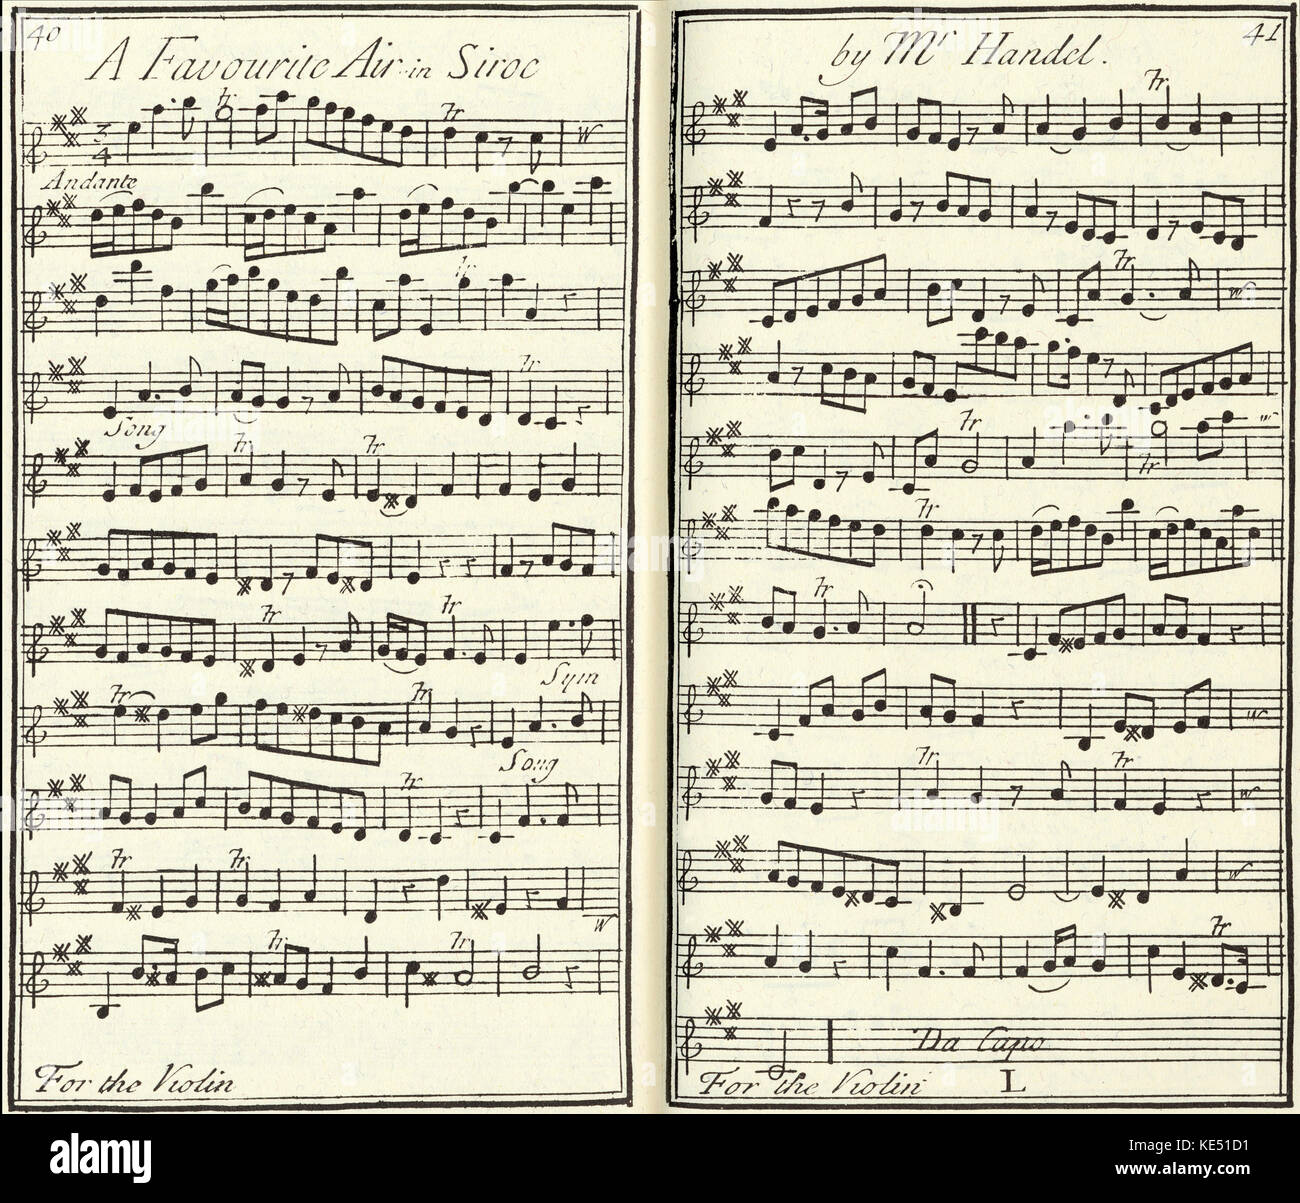 Handel 's operea Siroc , partituras para violín, p40-41-' un favorito en el aire, por el Sr. Siroc Handel. ' Publicado en Londres, 1731. George Frideric Handel, compositor alemán: 23 de febrero de 1685 - 14 de abril de 1759 Foto de stock